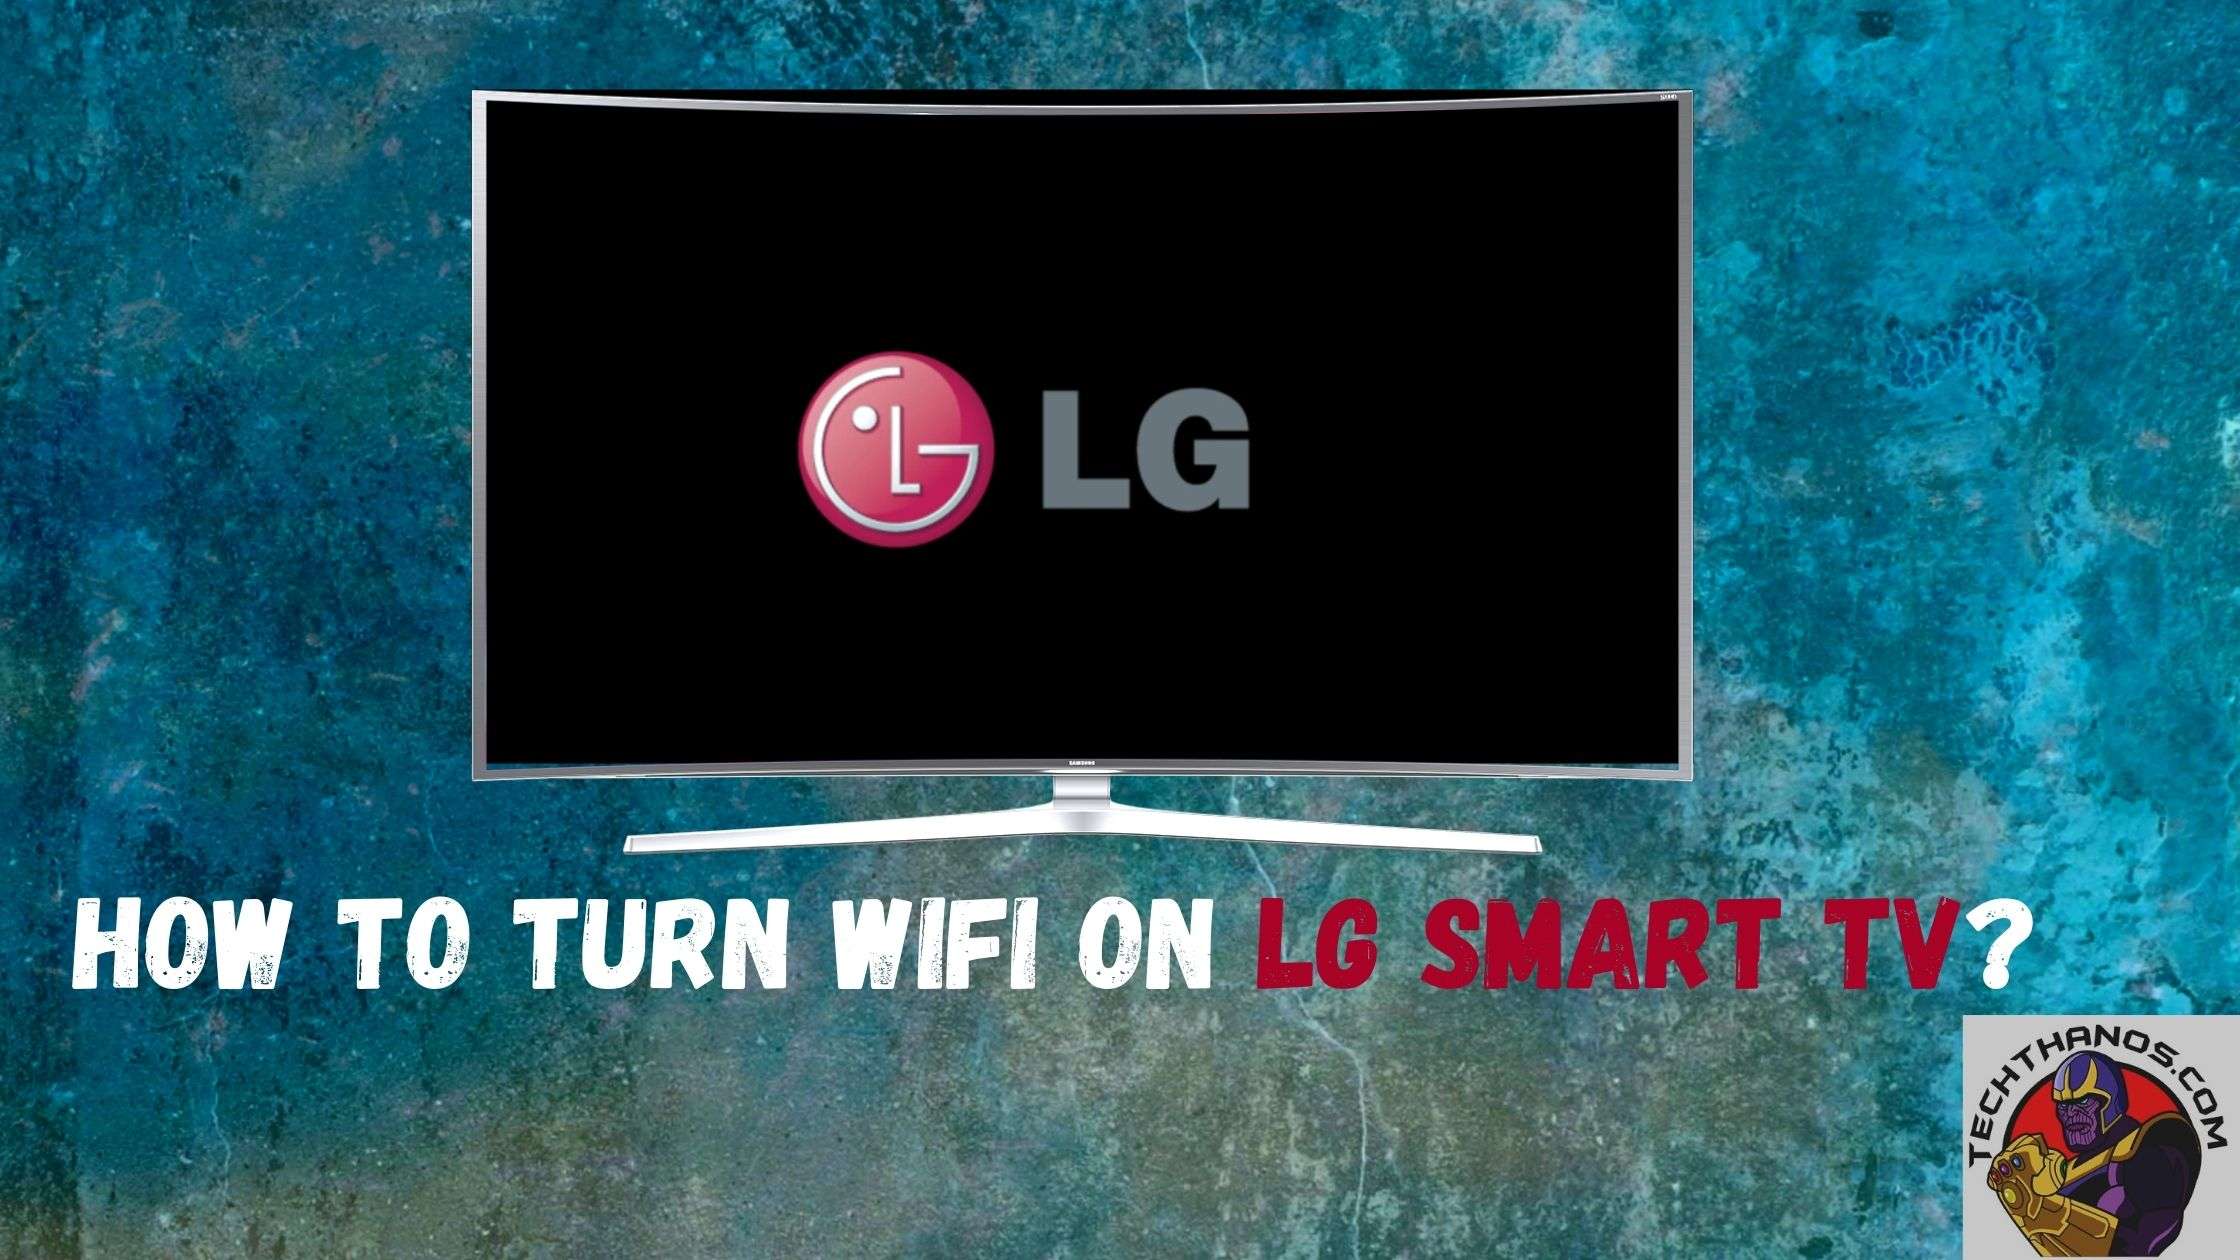 Philo App On Lg Smart TV